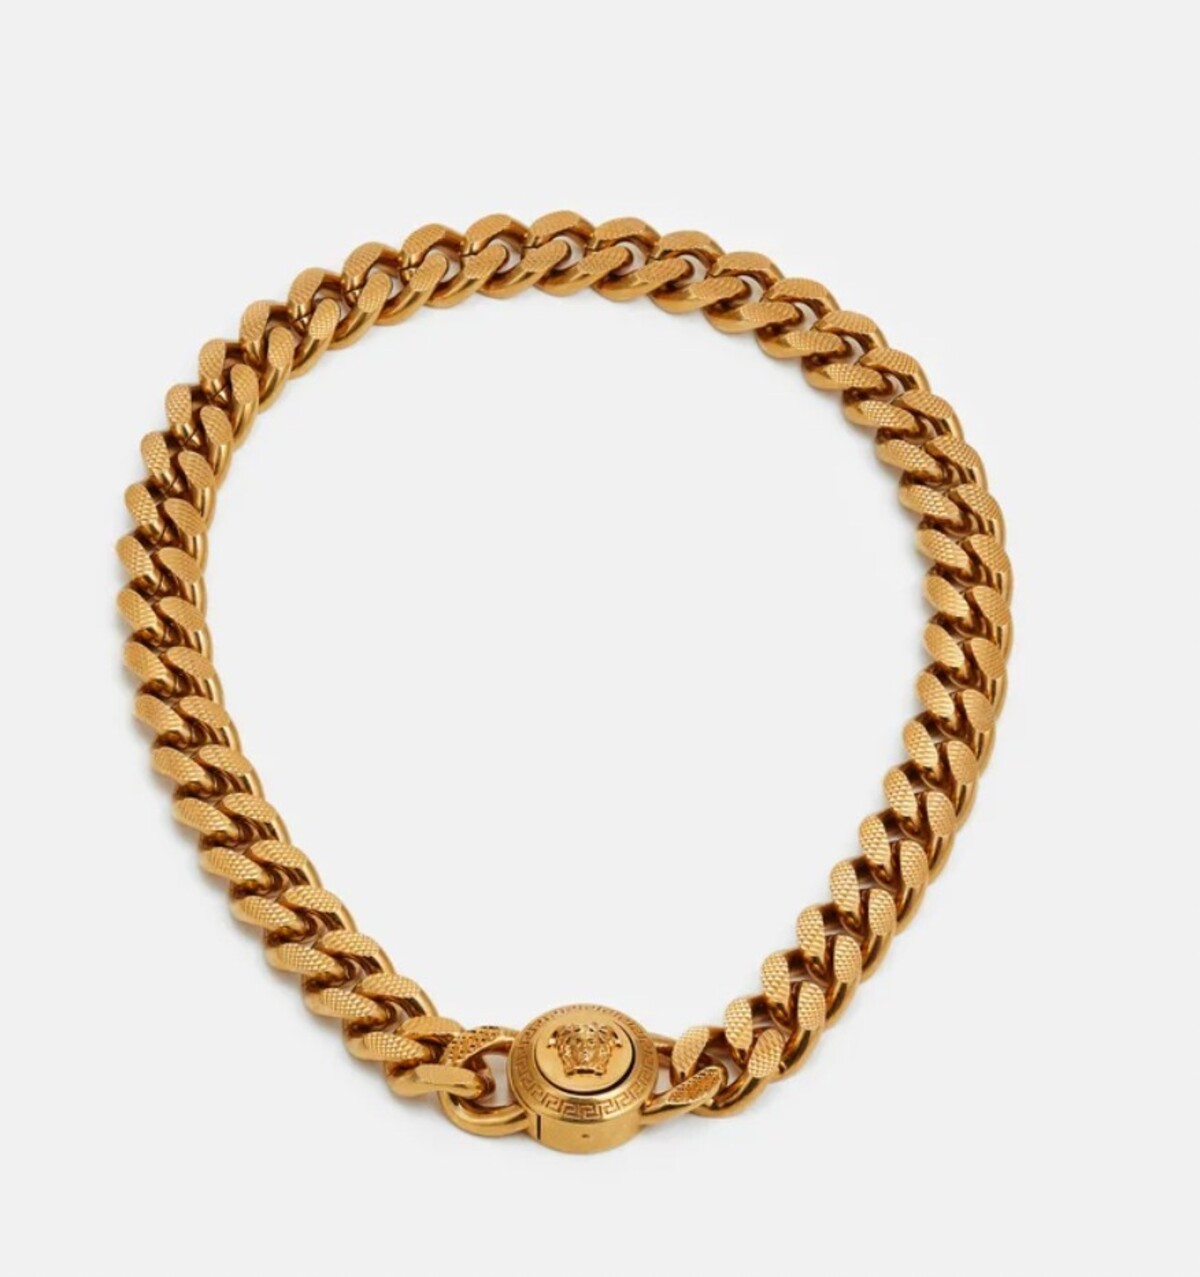 Ak túžiš svojmu streetstylovému outfitu dodať poriadnu dávku luxusu, do pozornosti dávame masívny zlatý náhrdelník od Versaceho za 720 eur. Tento výber by pravdepodobne schválila aj RiRi.